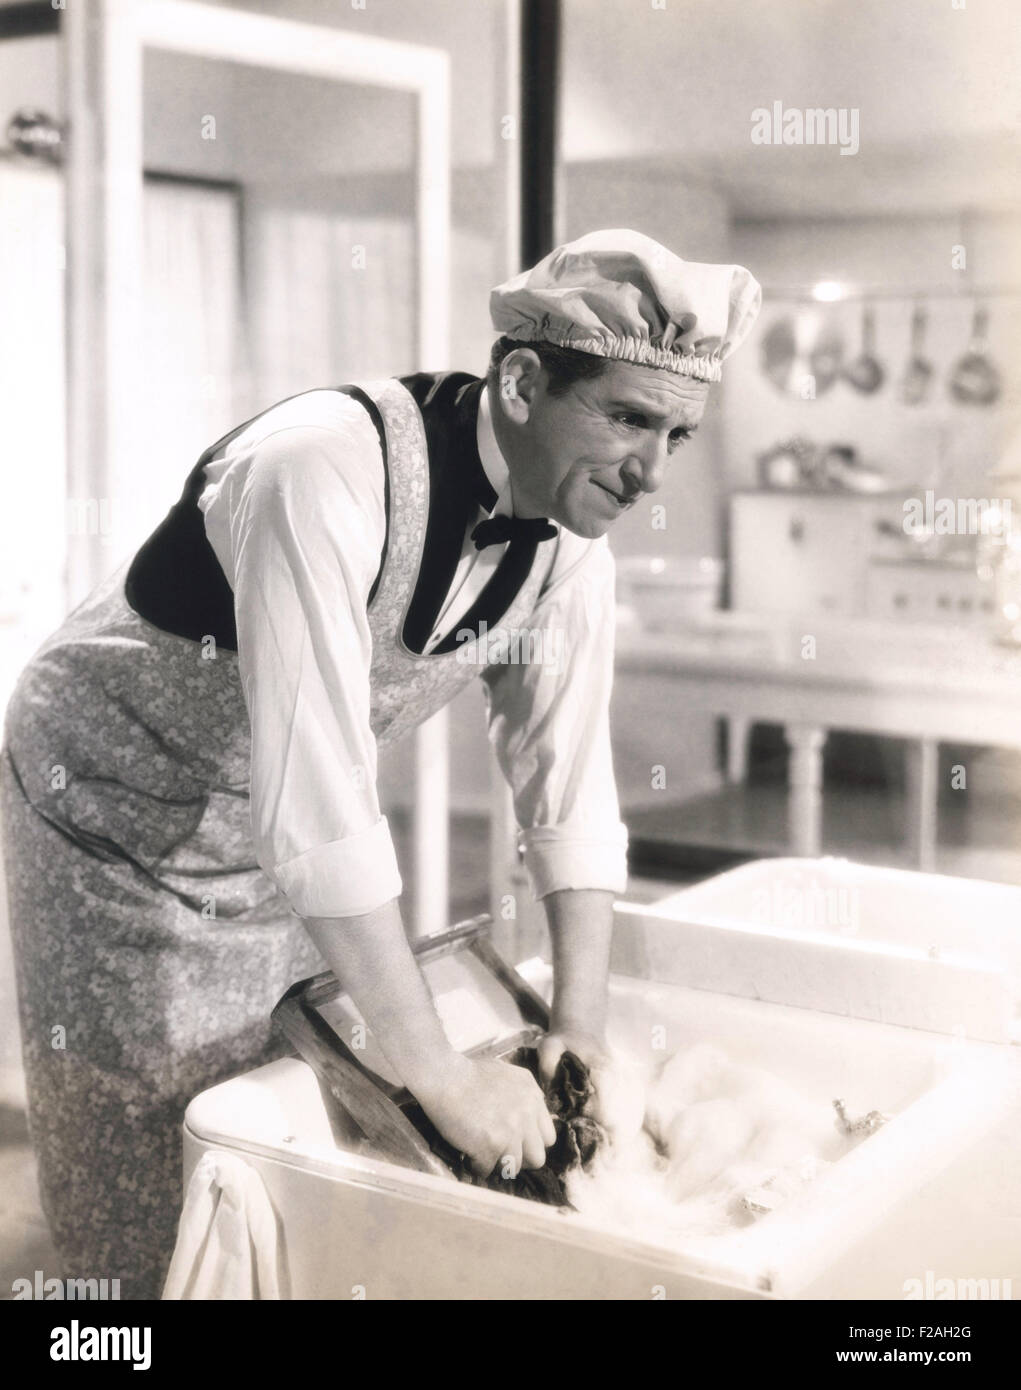 Homme laver les vêtements à l'évier de cuisine (OLVI008 OU  F054) Banque D'Images